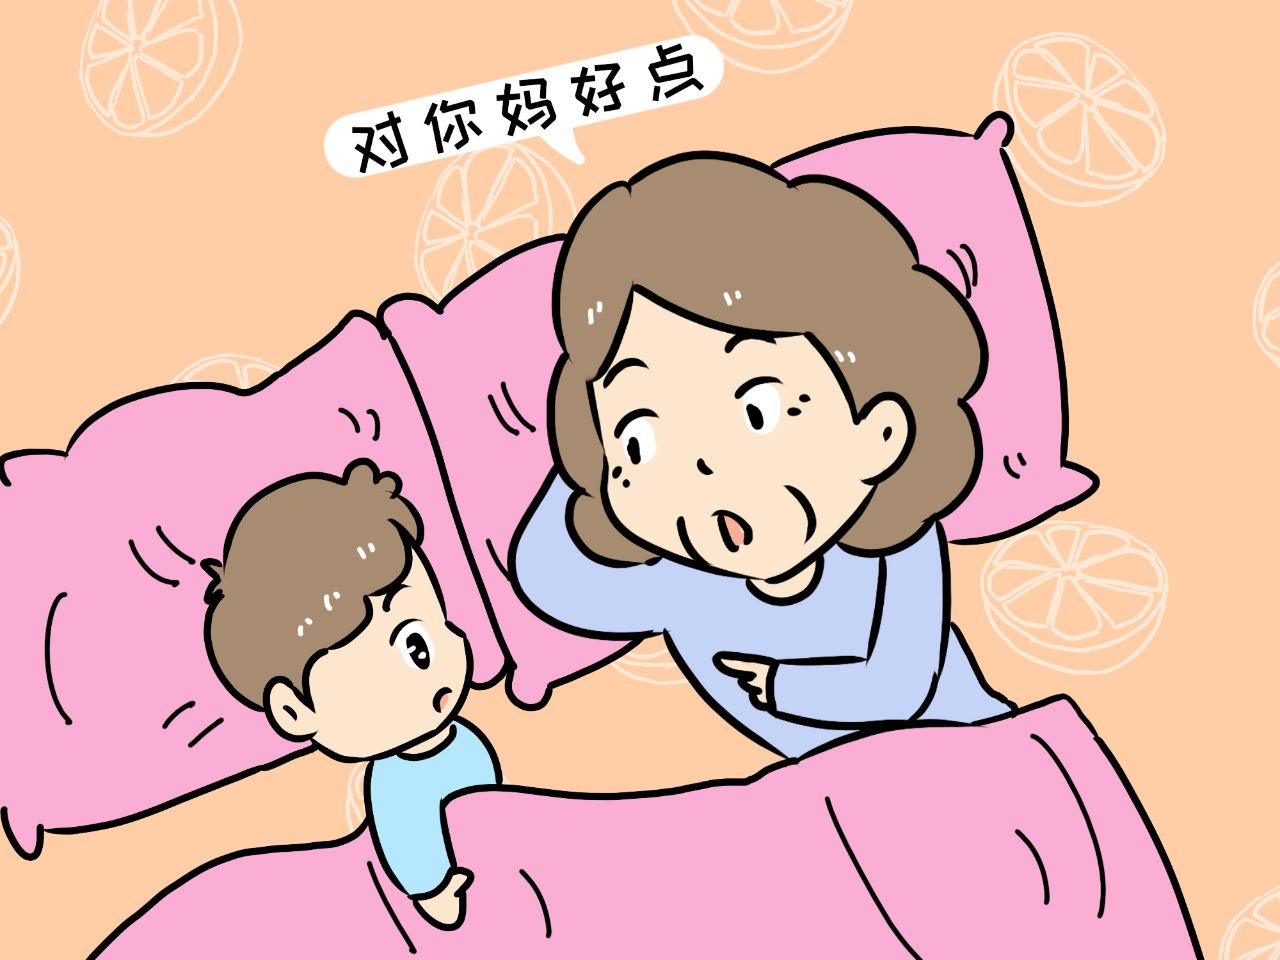 宝宝从小由奶奶或外婆带大,不愿意跟妈妈一起睡怎么办?